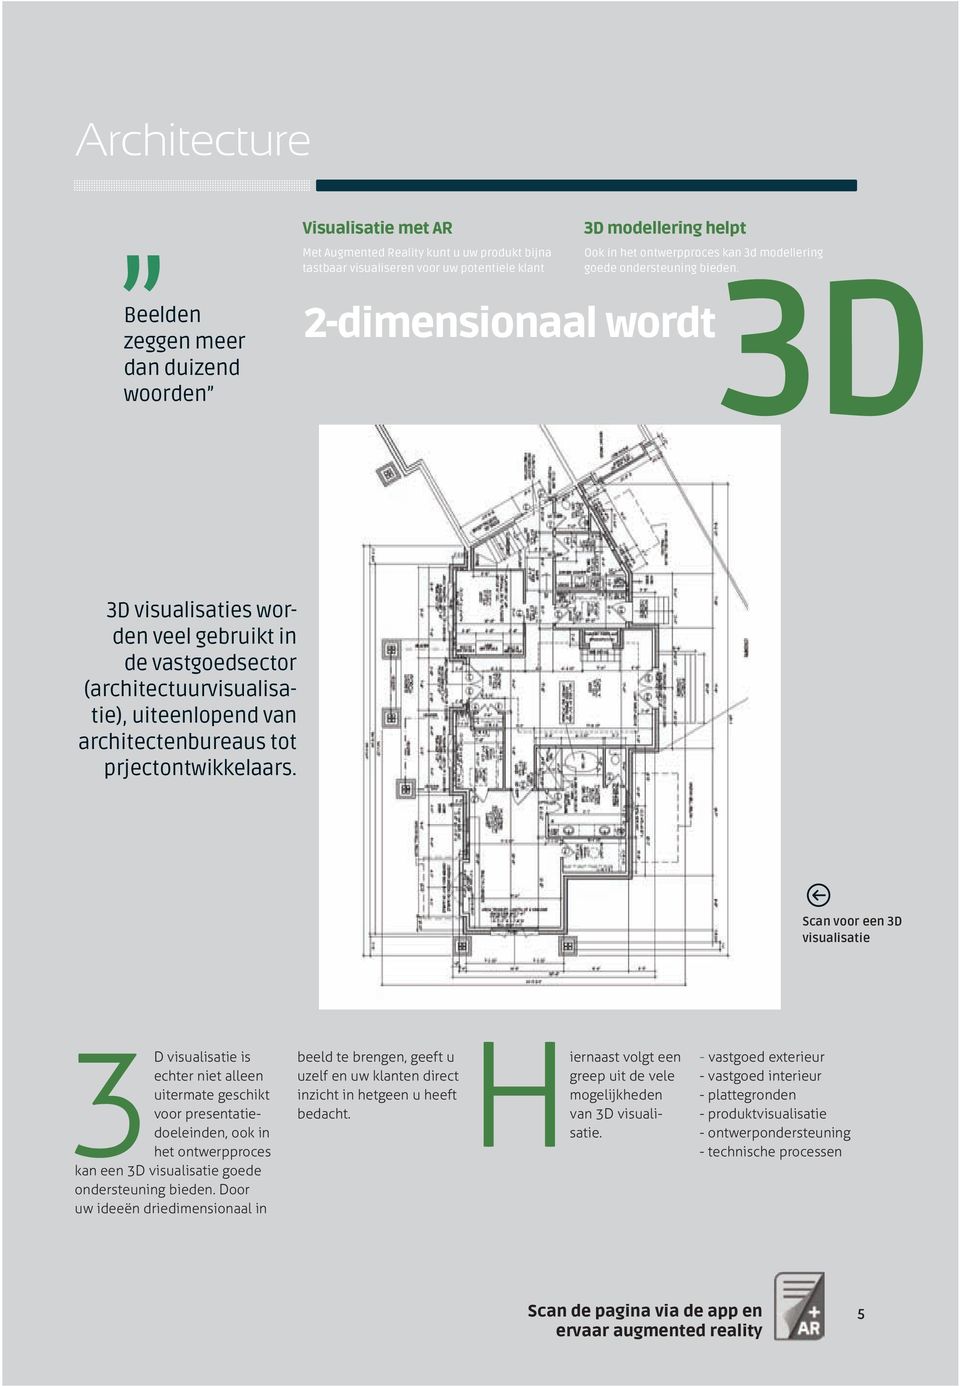 2-dimensionaal wordt Beelden zeggen meer dan duizend woorden 3D 3D visualisaties worden veel gebruikt in de vastgoedsector (architectuurvisualisatie), uiteenlopend van architectenbureaus tot